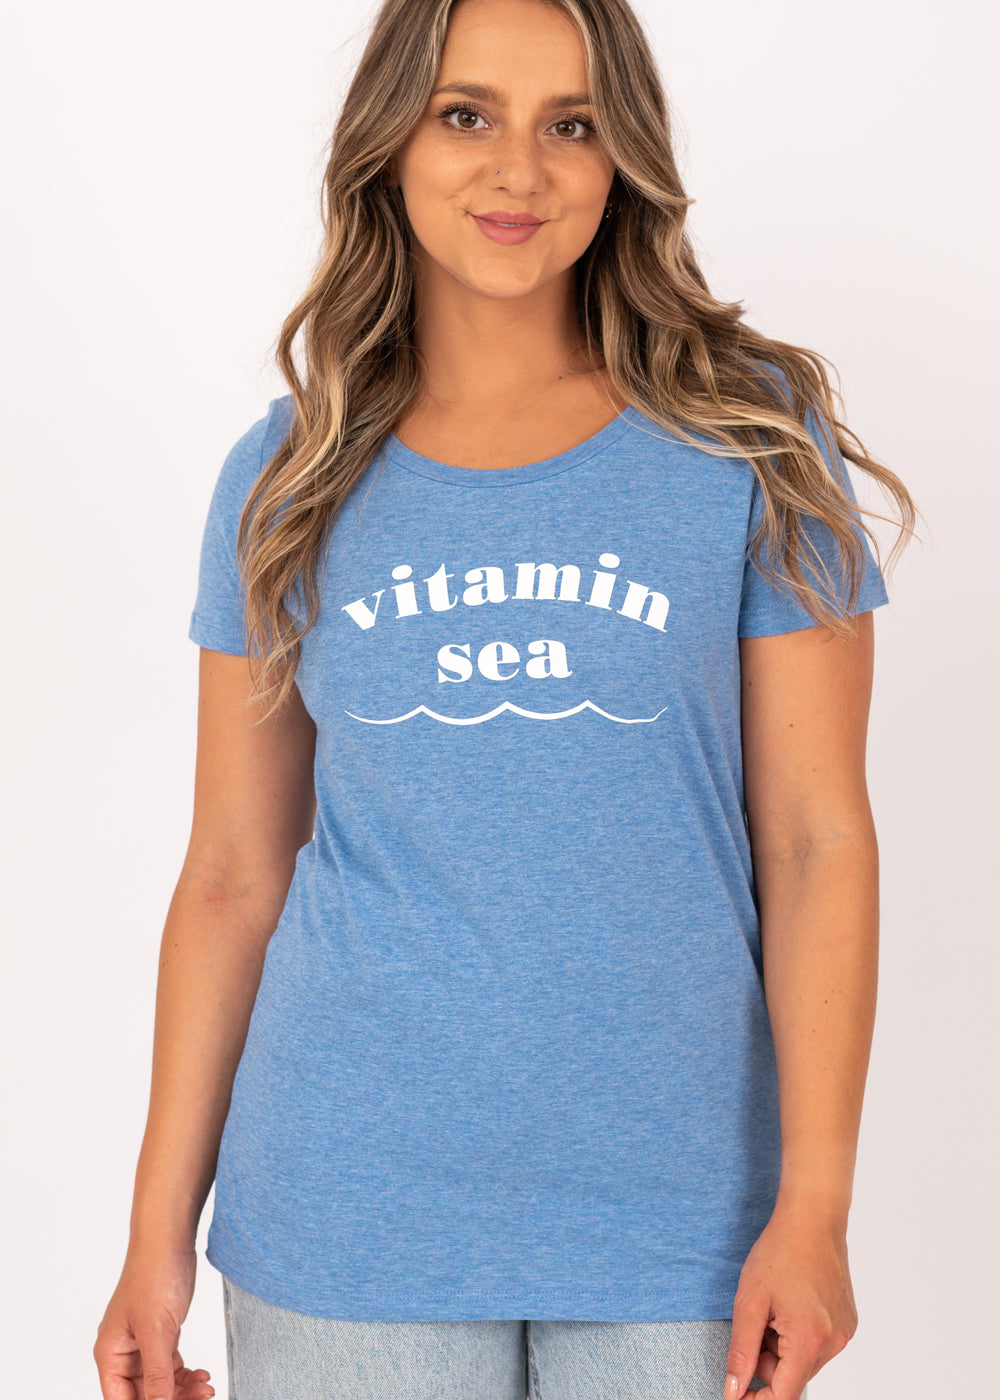 Vitamin Sea Organic Cotton Tee in Summer Blue – The Beach Boutique | A ...